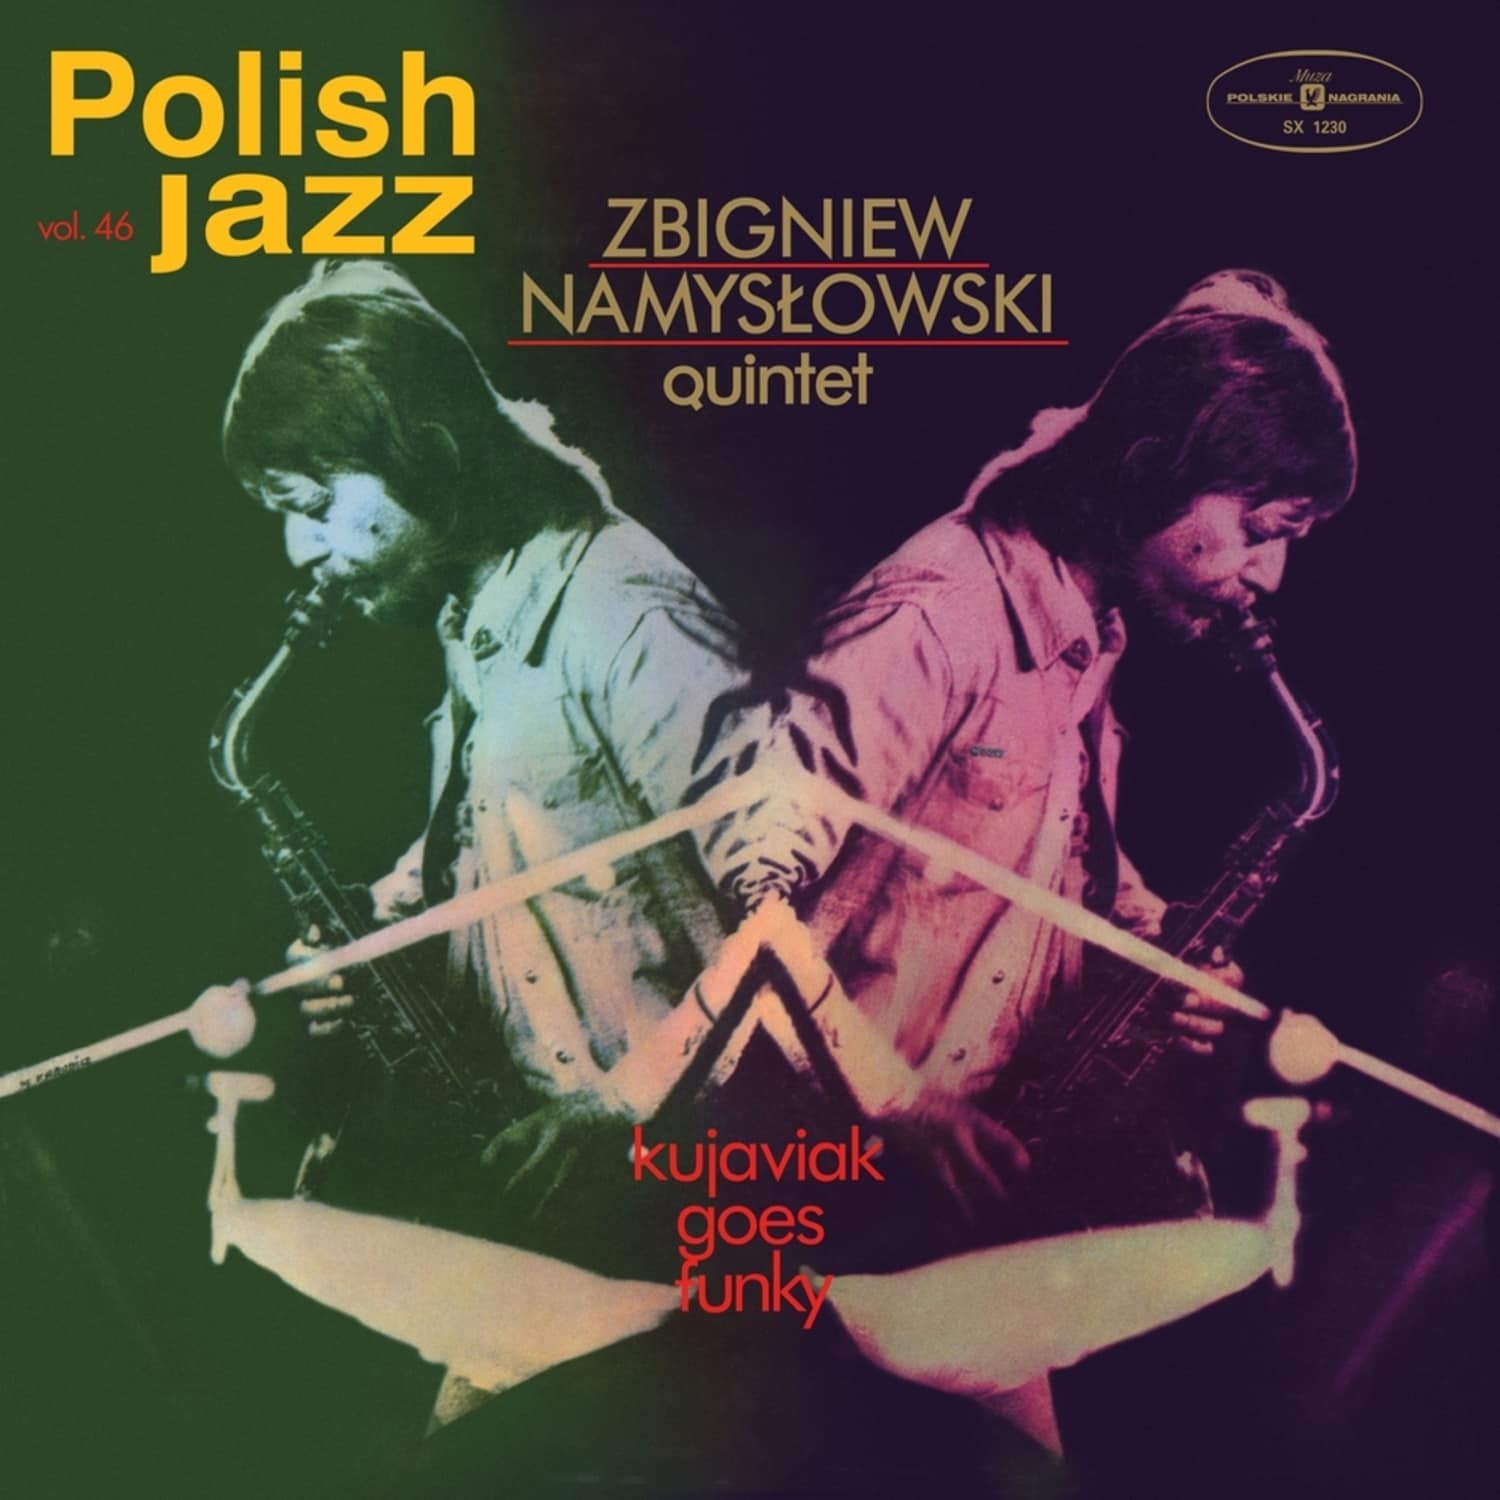 Zbigniew Quintet Namyslowski - KUJAVIAK GOES FUNKY 